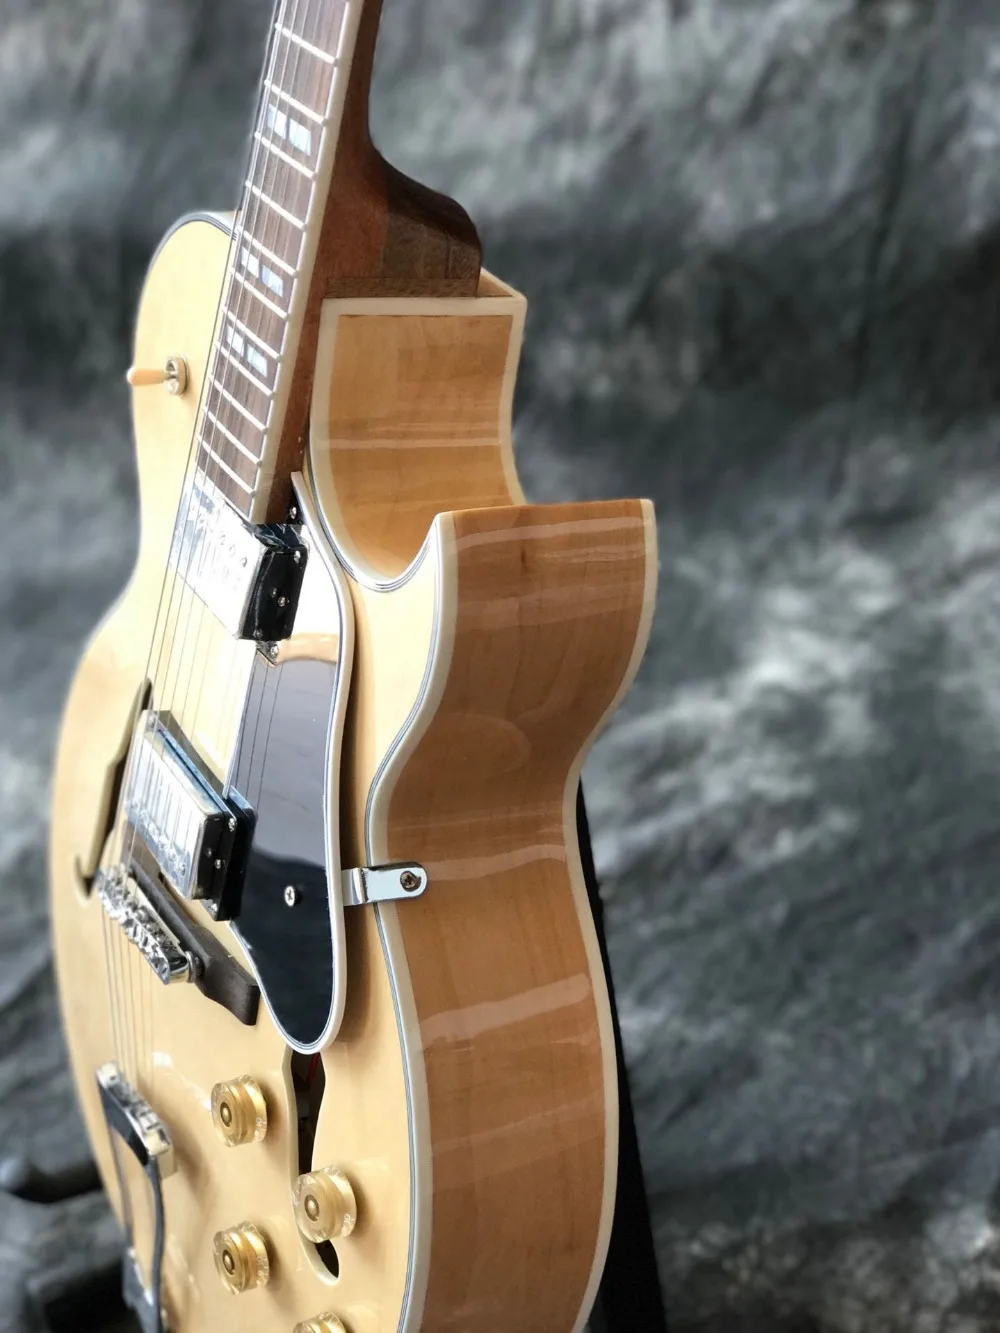 Пользовательская F электрическая гитара jazz с полым корпусом, черная накладка на 6 отверстий jazz gitaar, система vibrato. Реальные фотографии